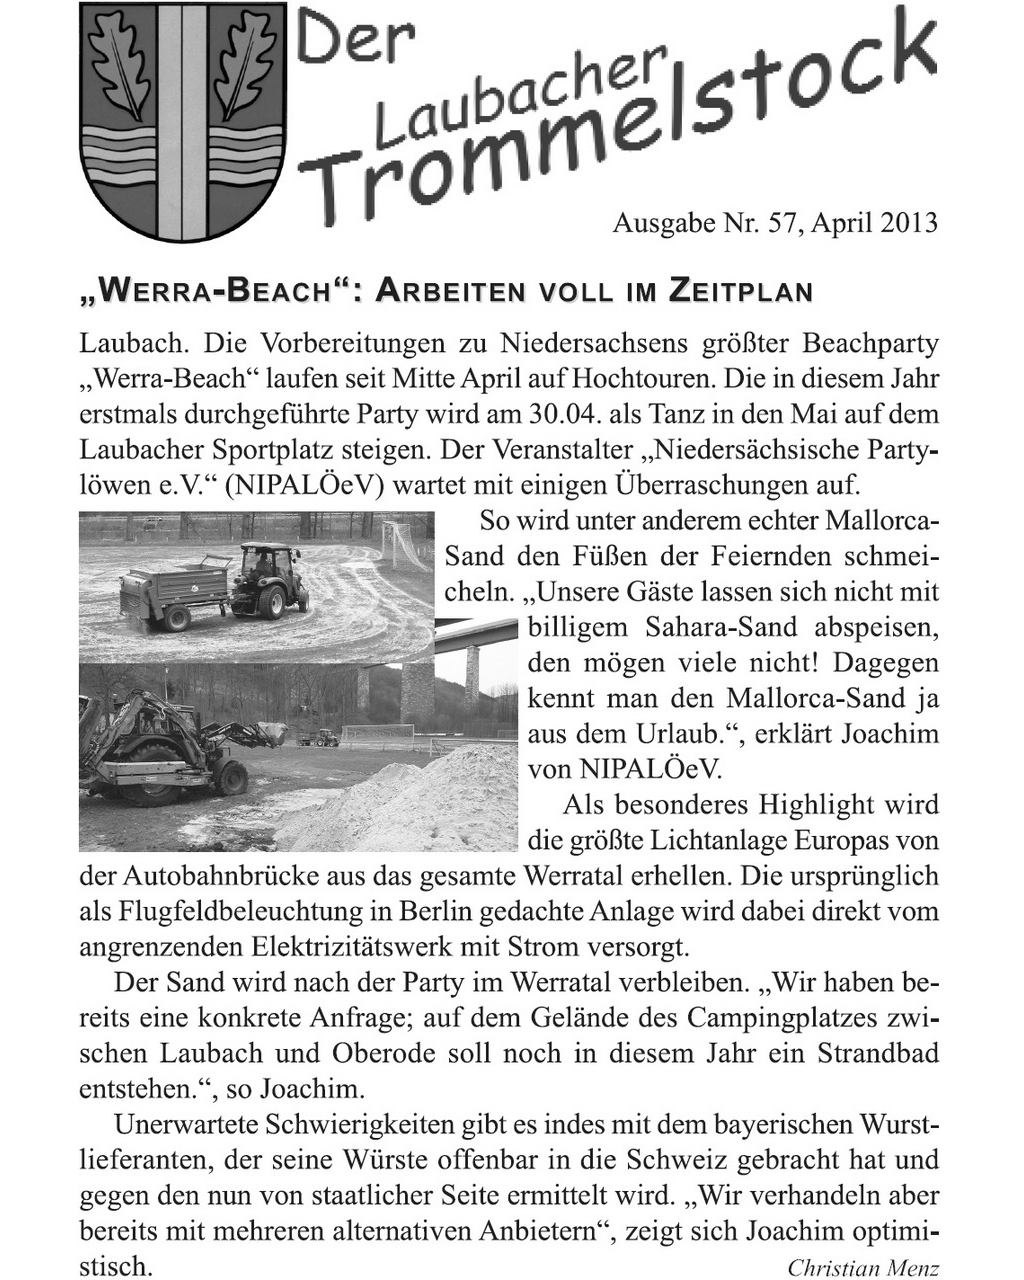 Laubacher-Trommelstock-Titelseite-057